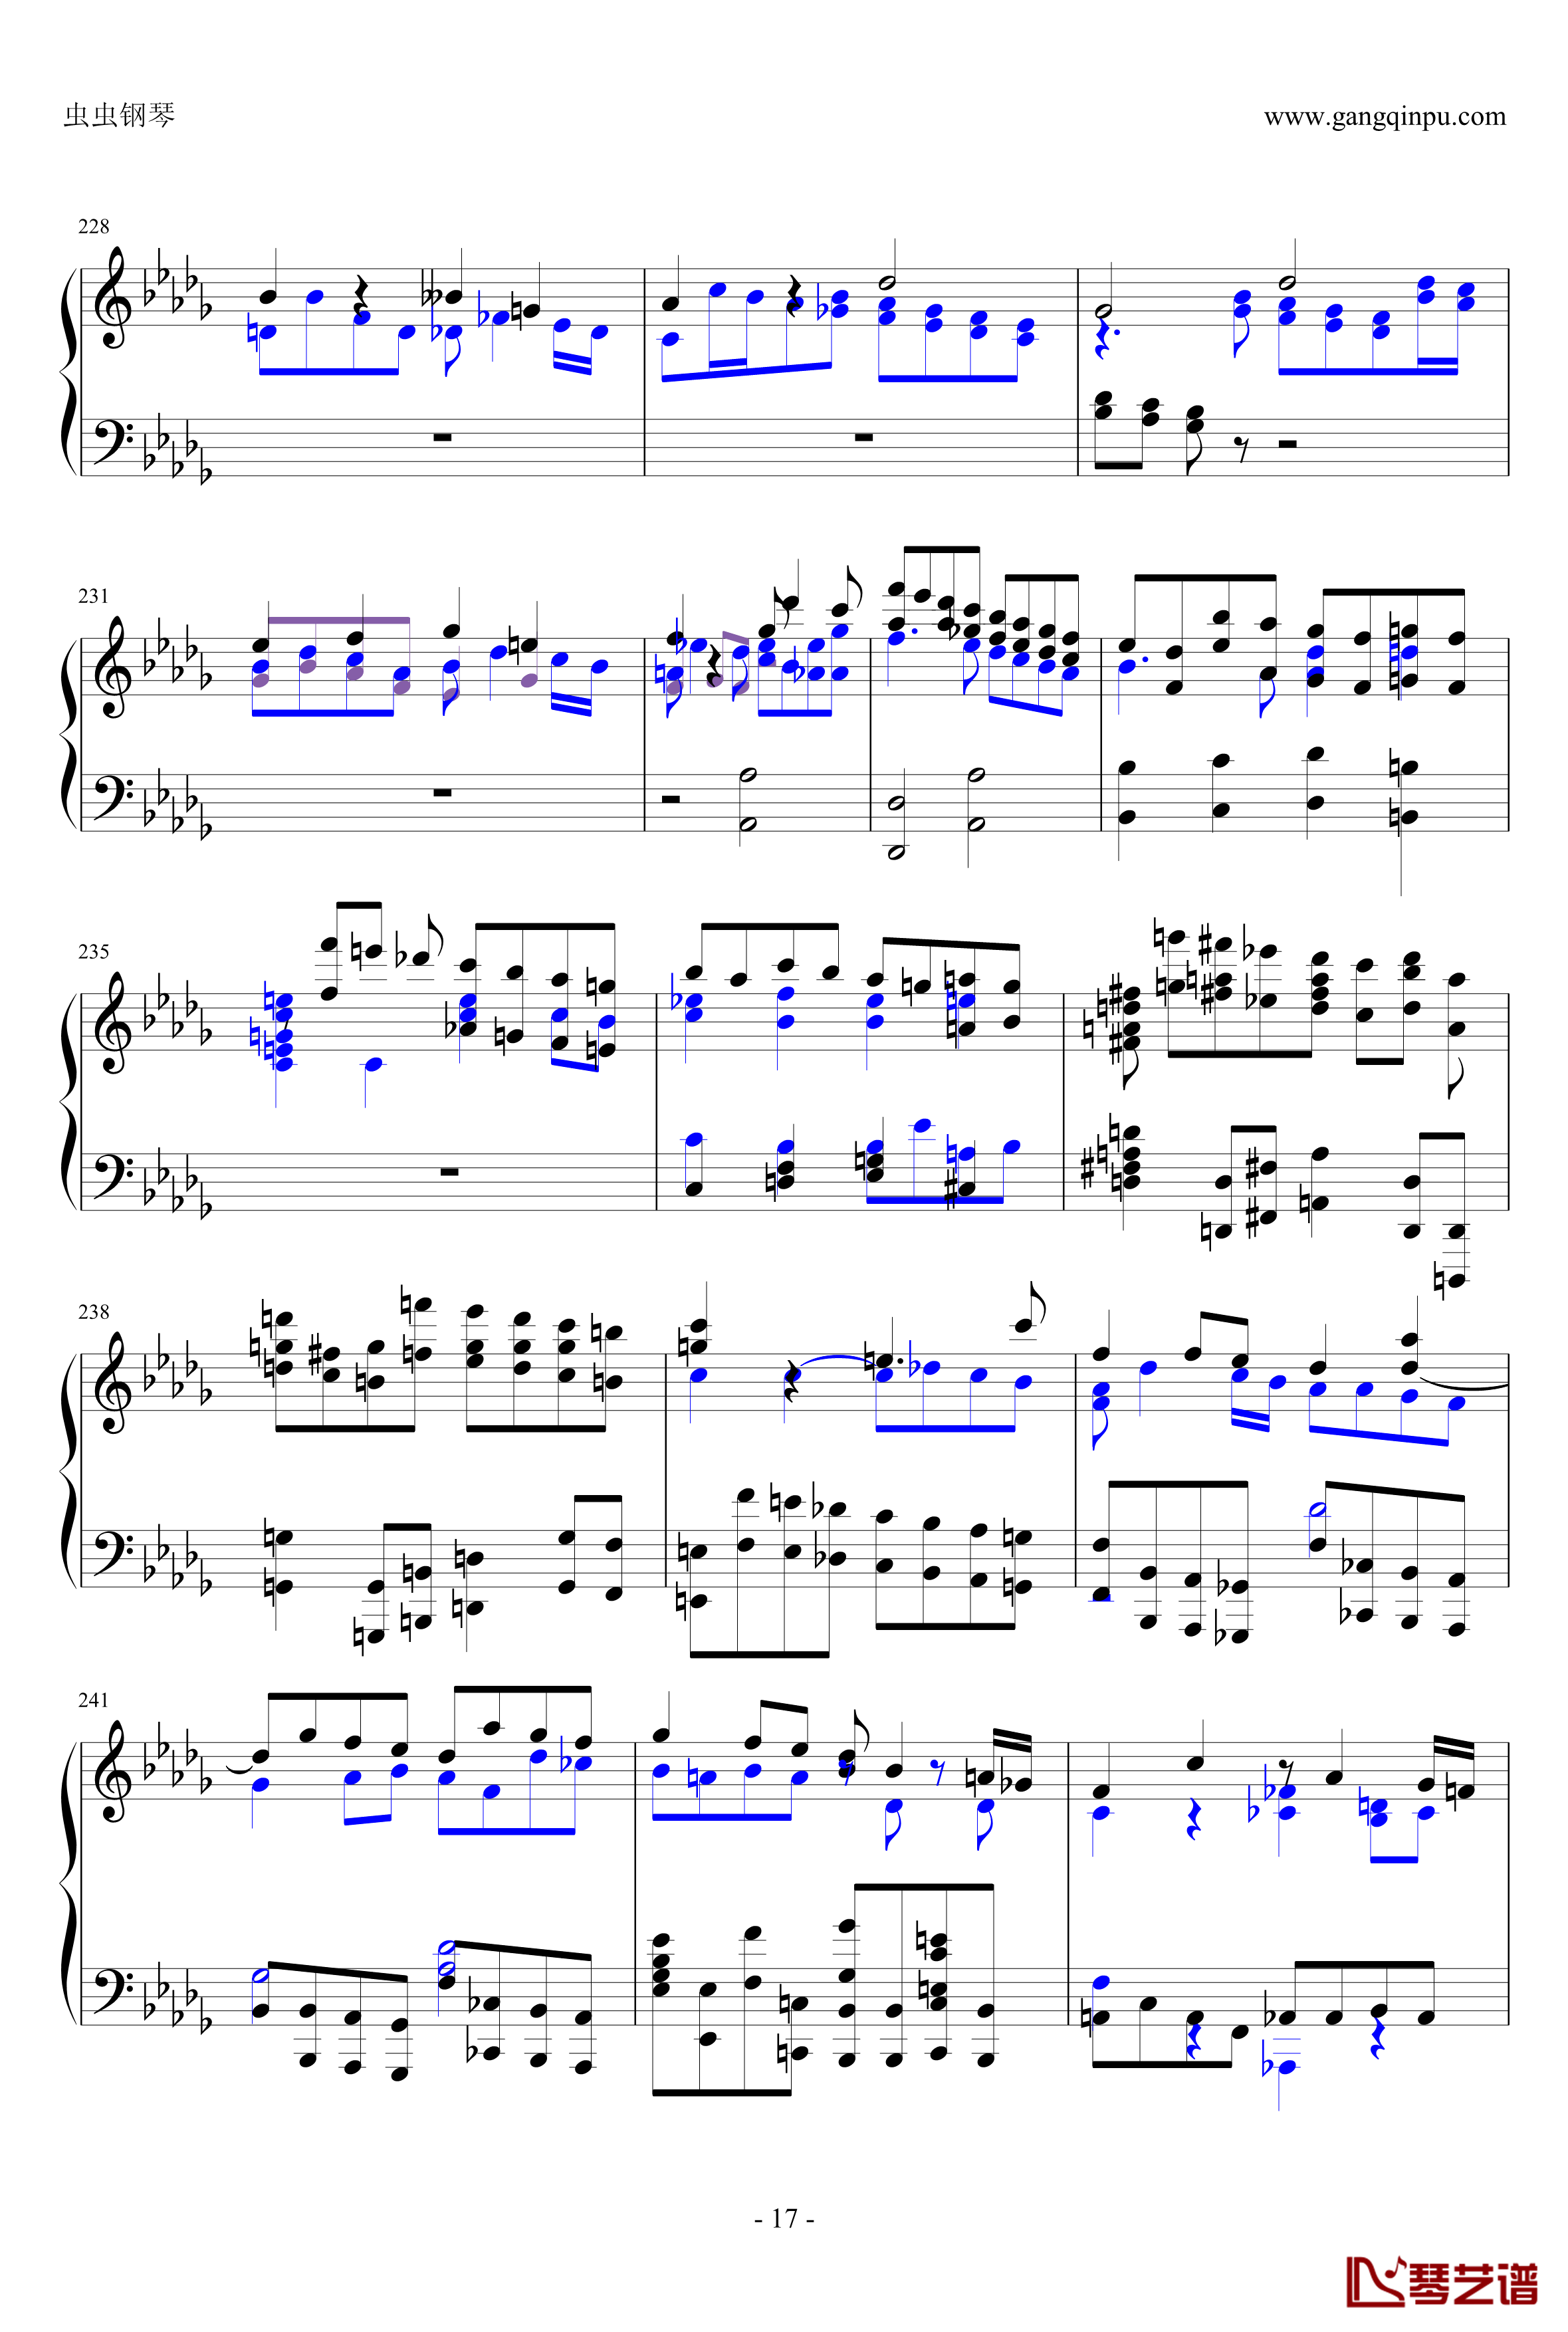 布鲁克纳第五交响曲第四乐章钢琴谱-钢琴独奏版17